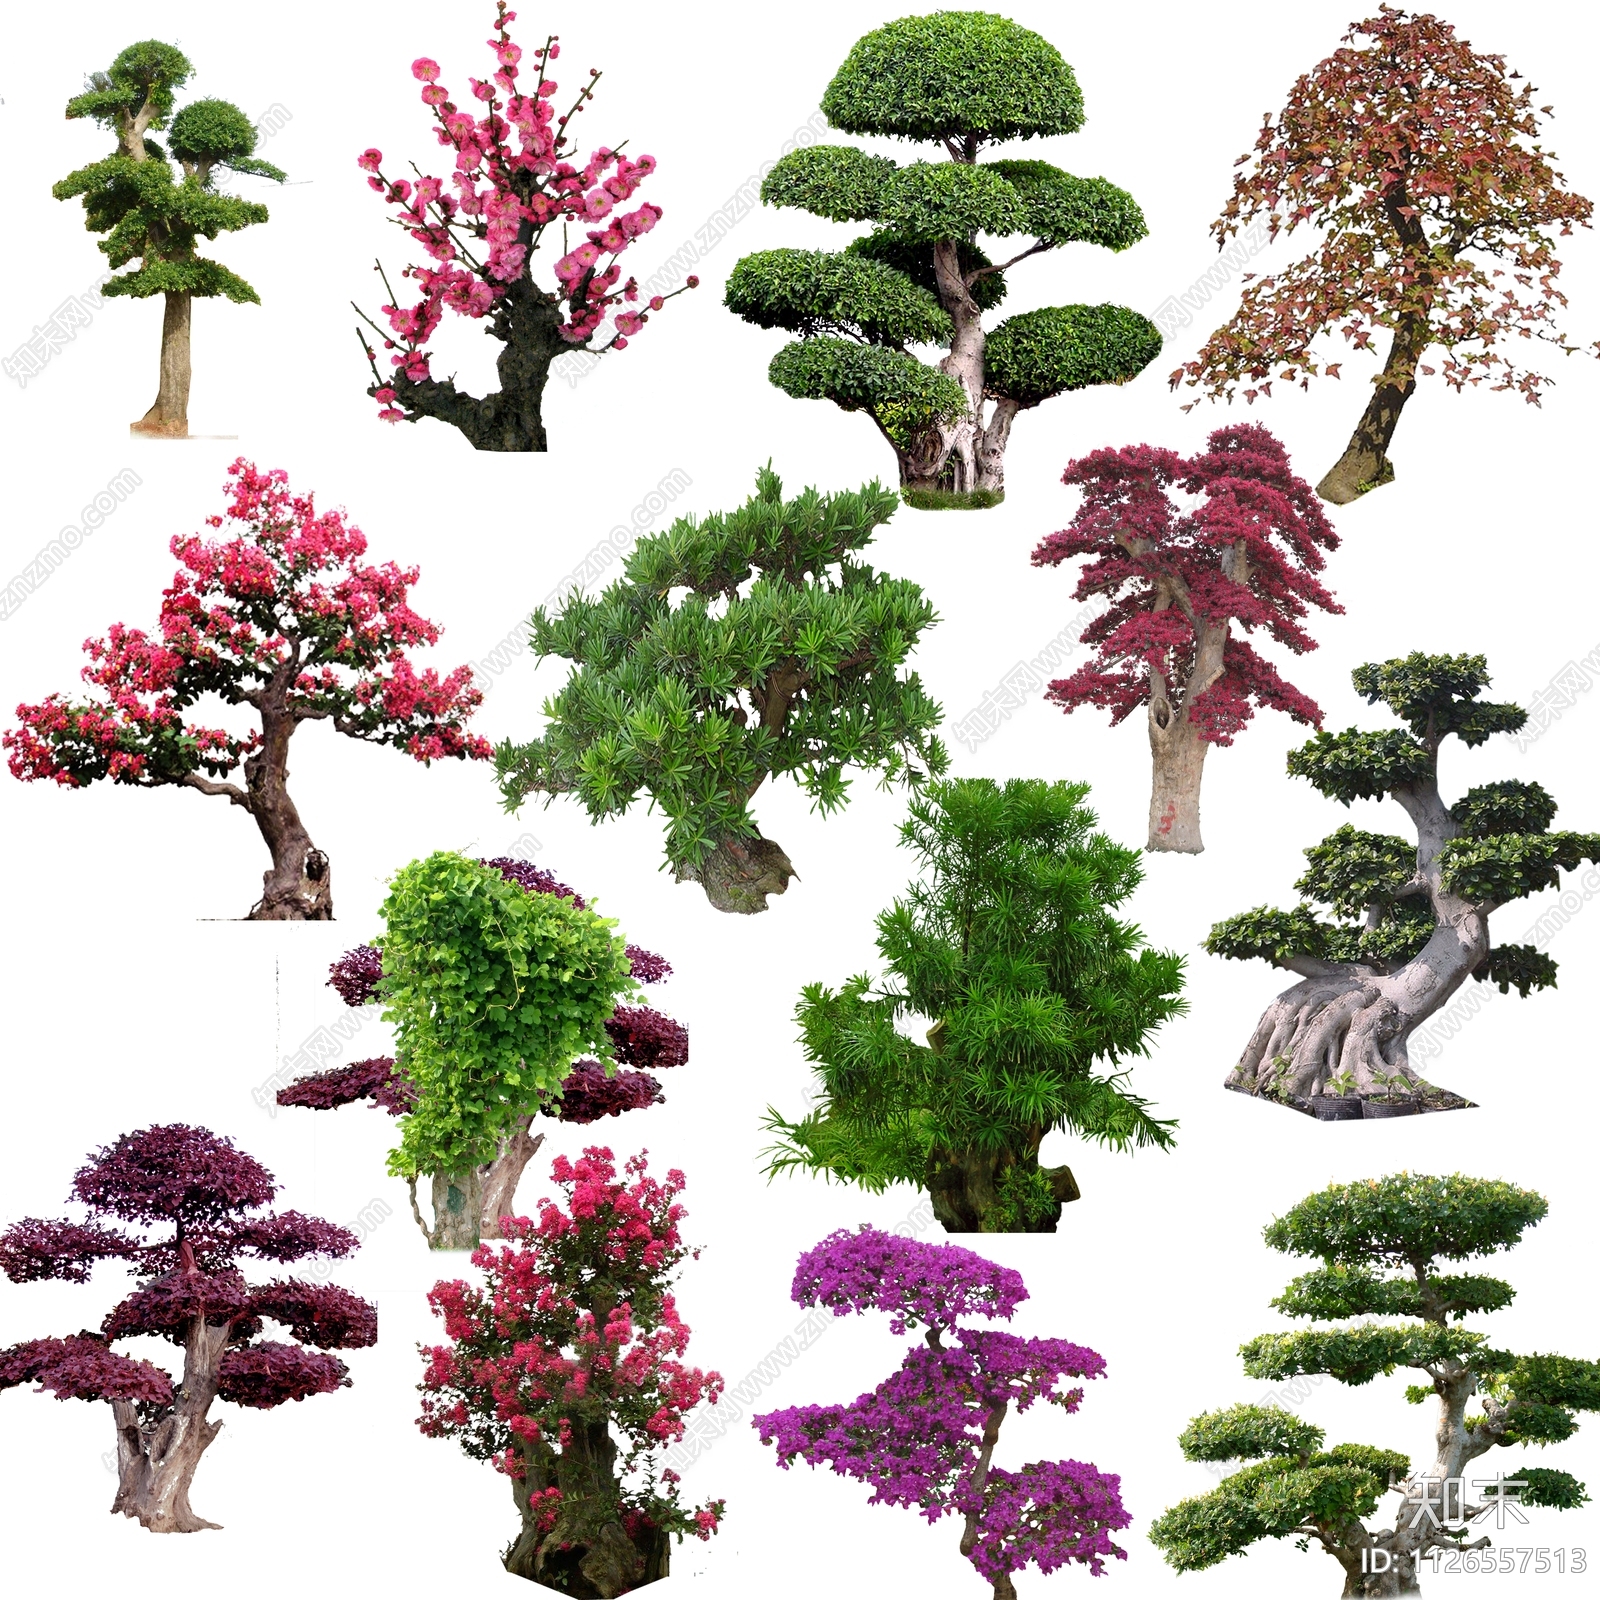 造型松植物景观效果图PSD免抠贴图下载【ID:1126557513】